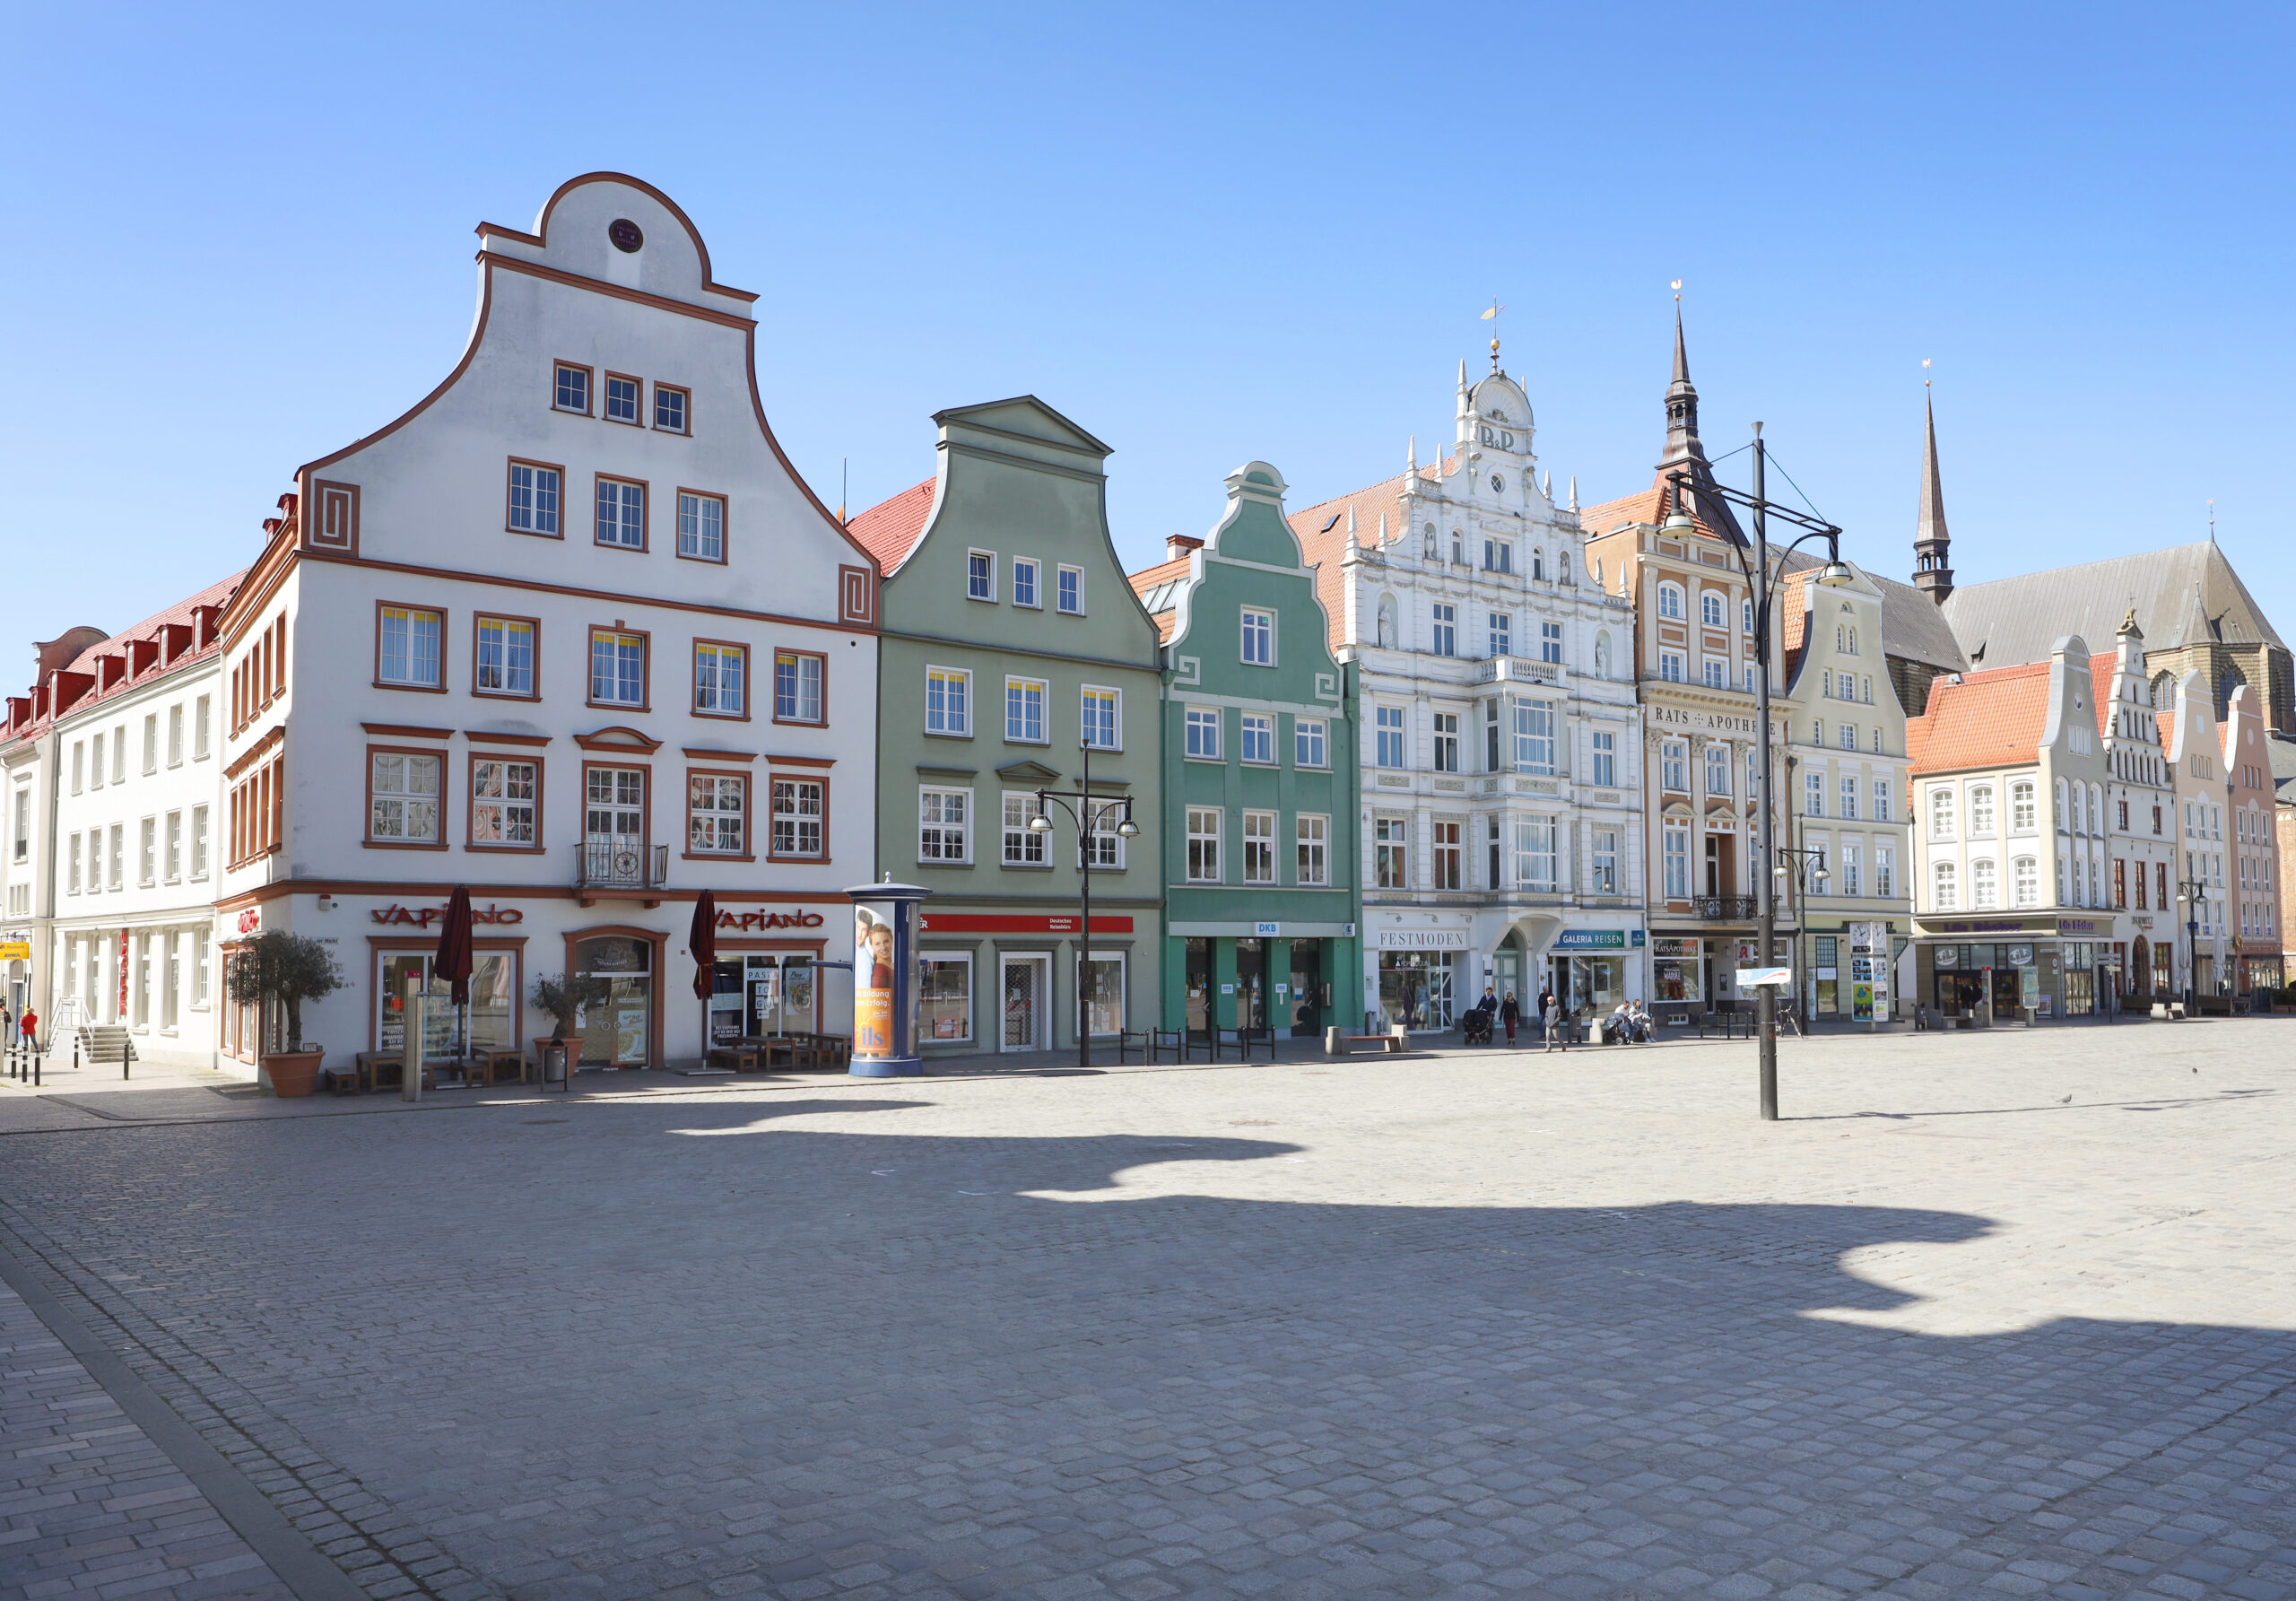 Rostock: Blick auf den Neuen Markt mit den Giebelhäusern auf der Westseite. (Symbolbild)